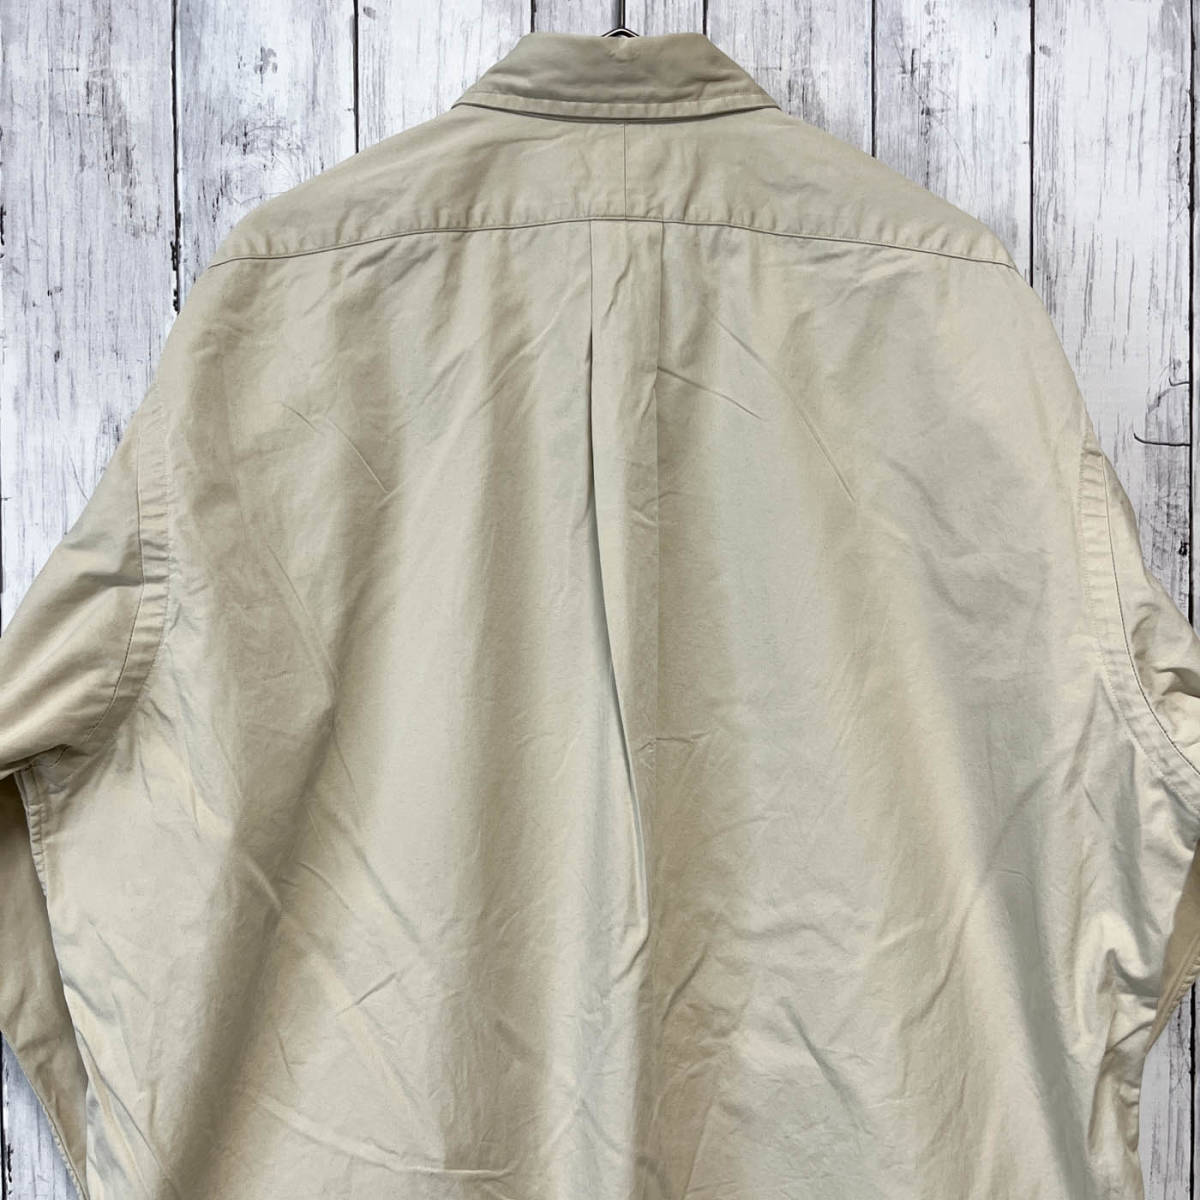  Ralph Lauren Ralph Lauren BLAKE рубашка с длинным рукавом мужской one отметка хлопок 100% M размер 3-797